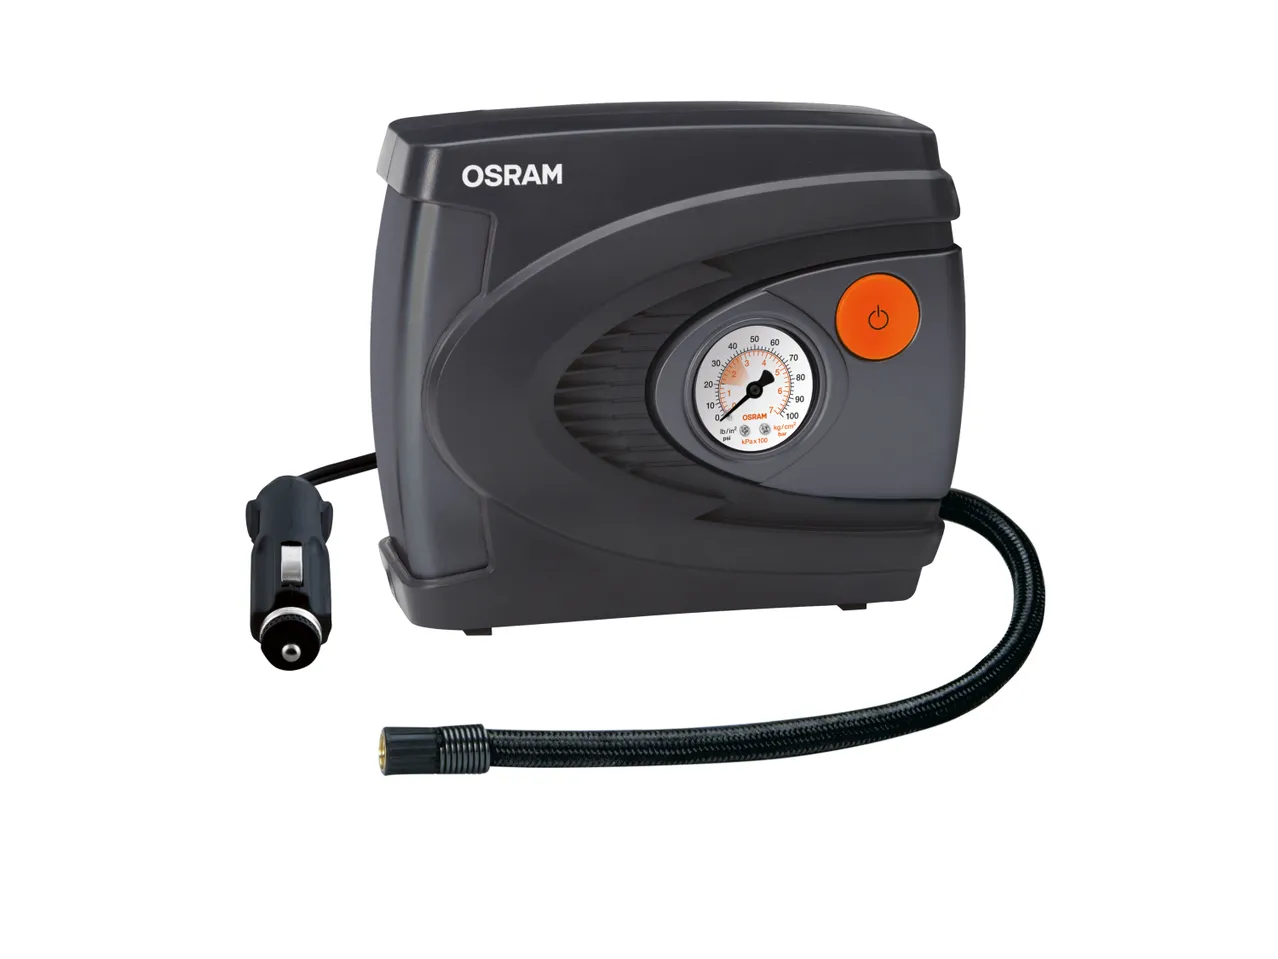 Compressore per gonfiaggio pneumatici Osram, prezzo 19.99 EUR 
Compressore per ...